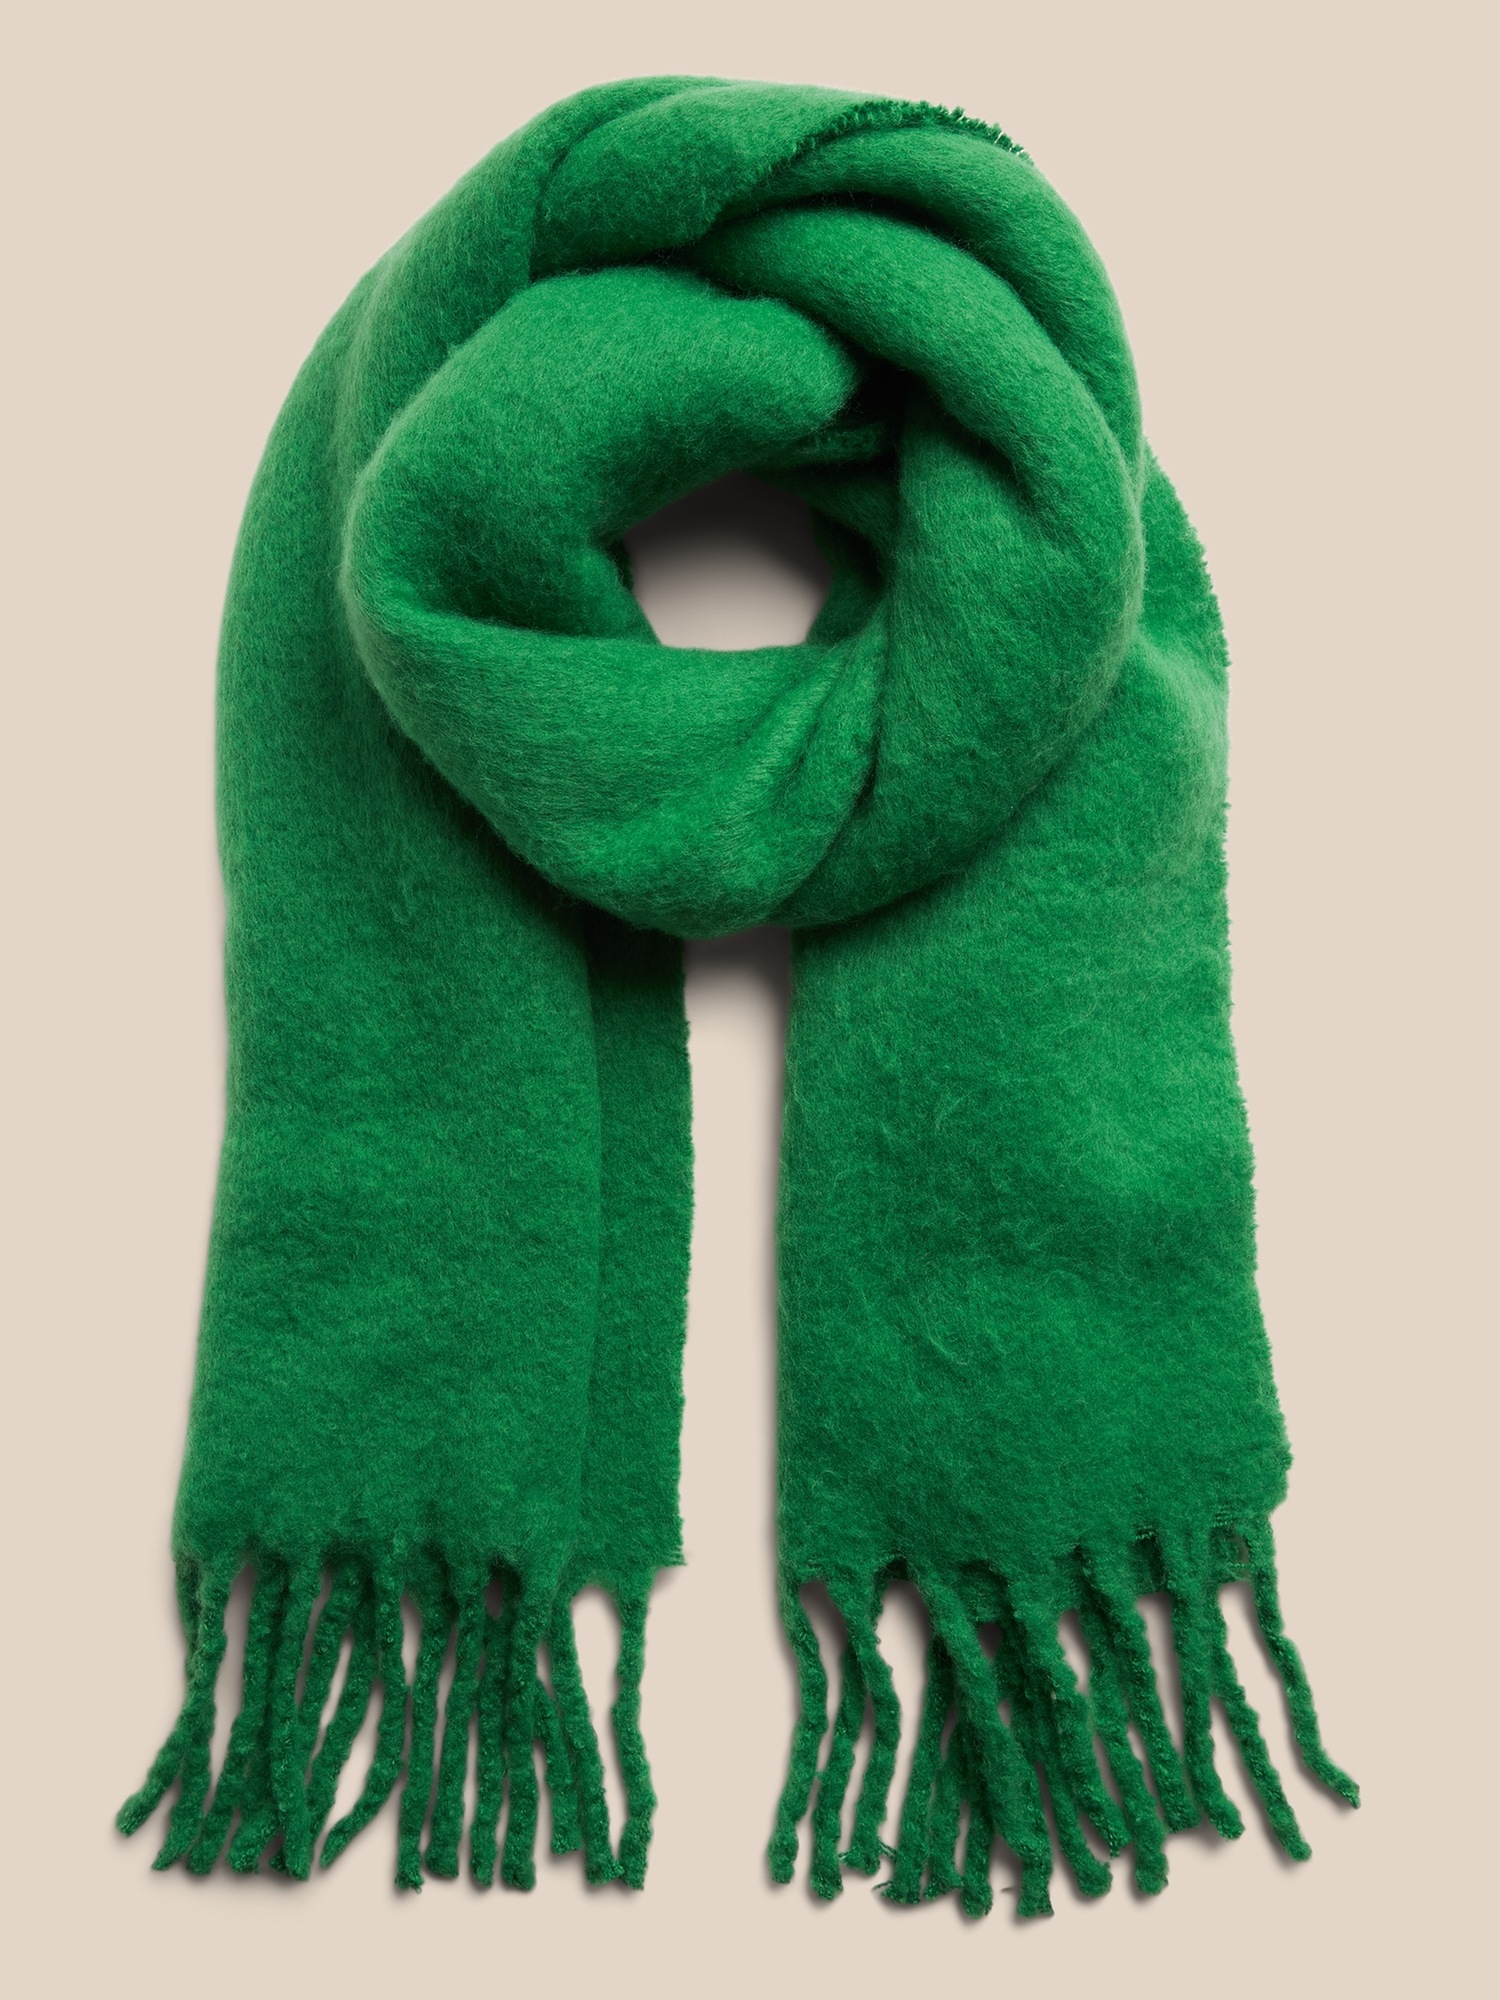 Green fuzzy scarf